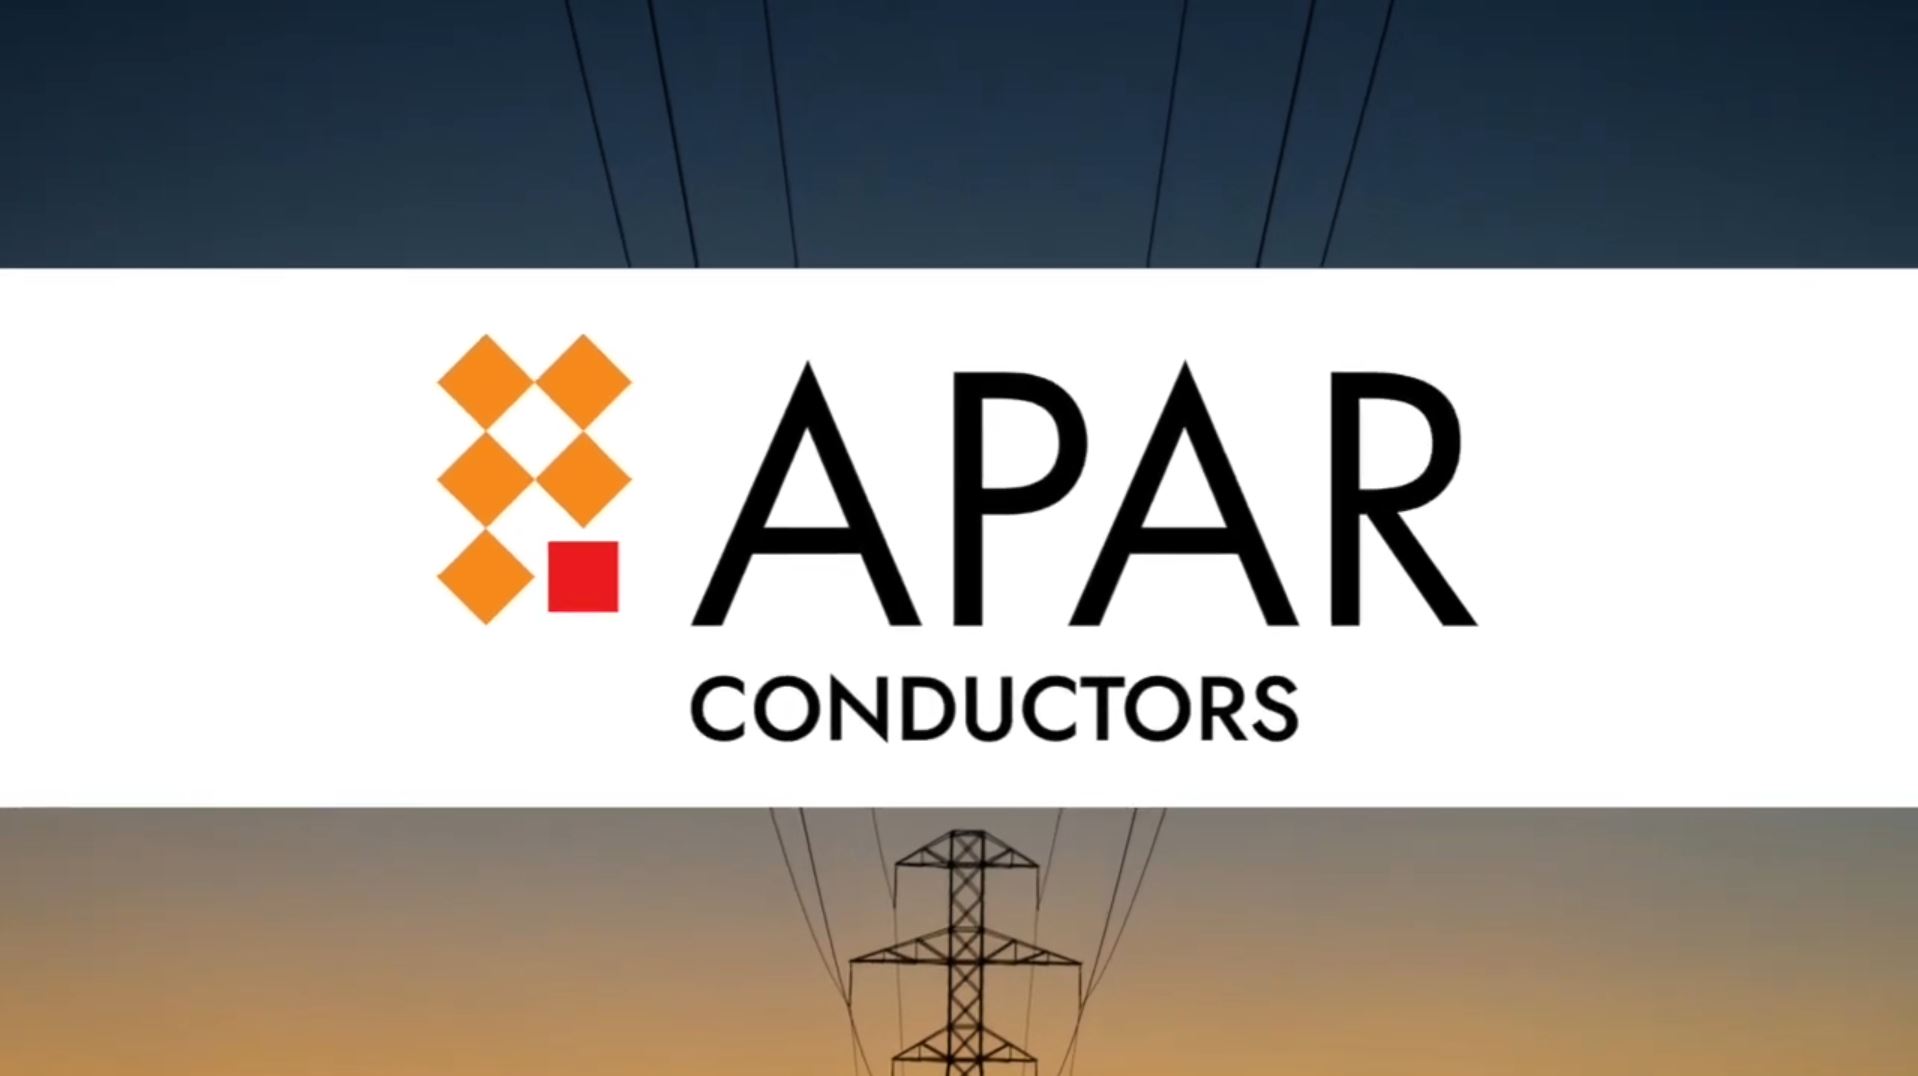 APAR Conductors